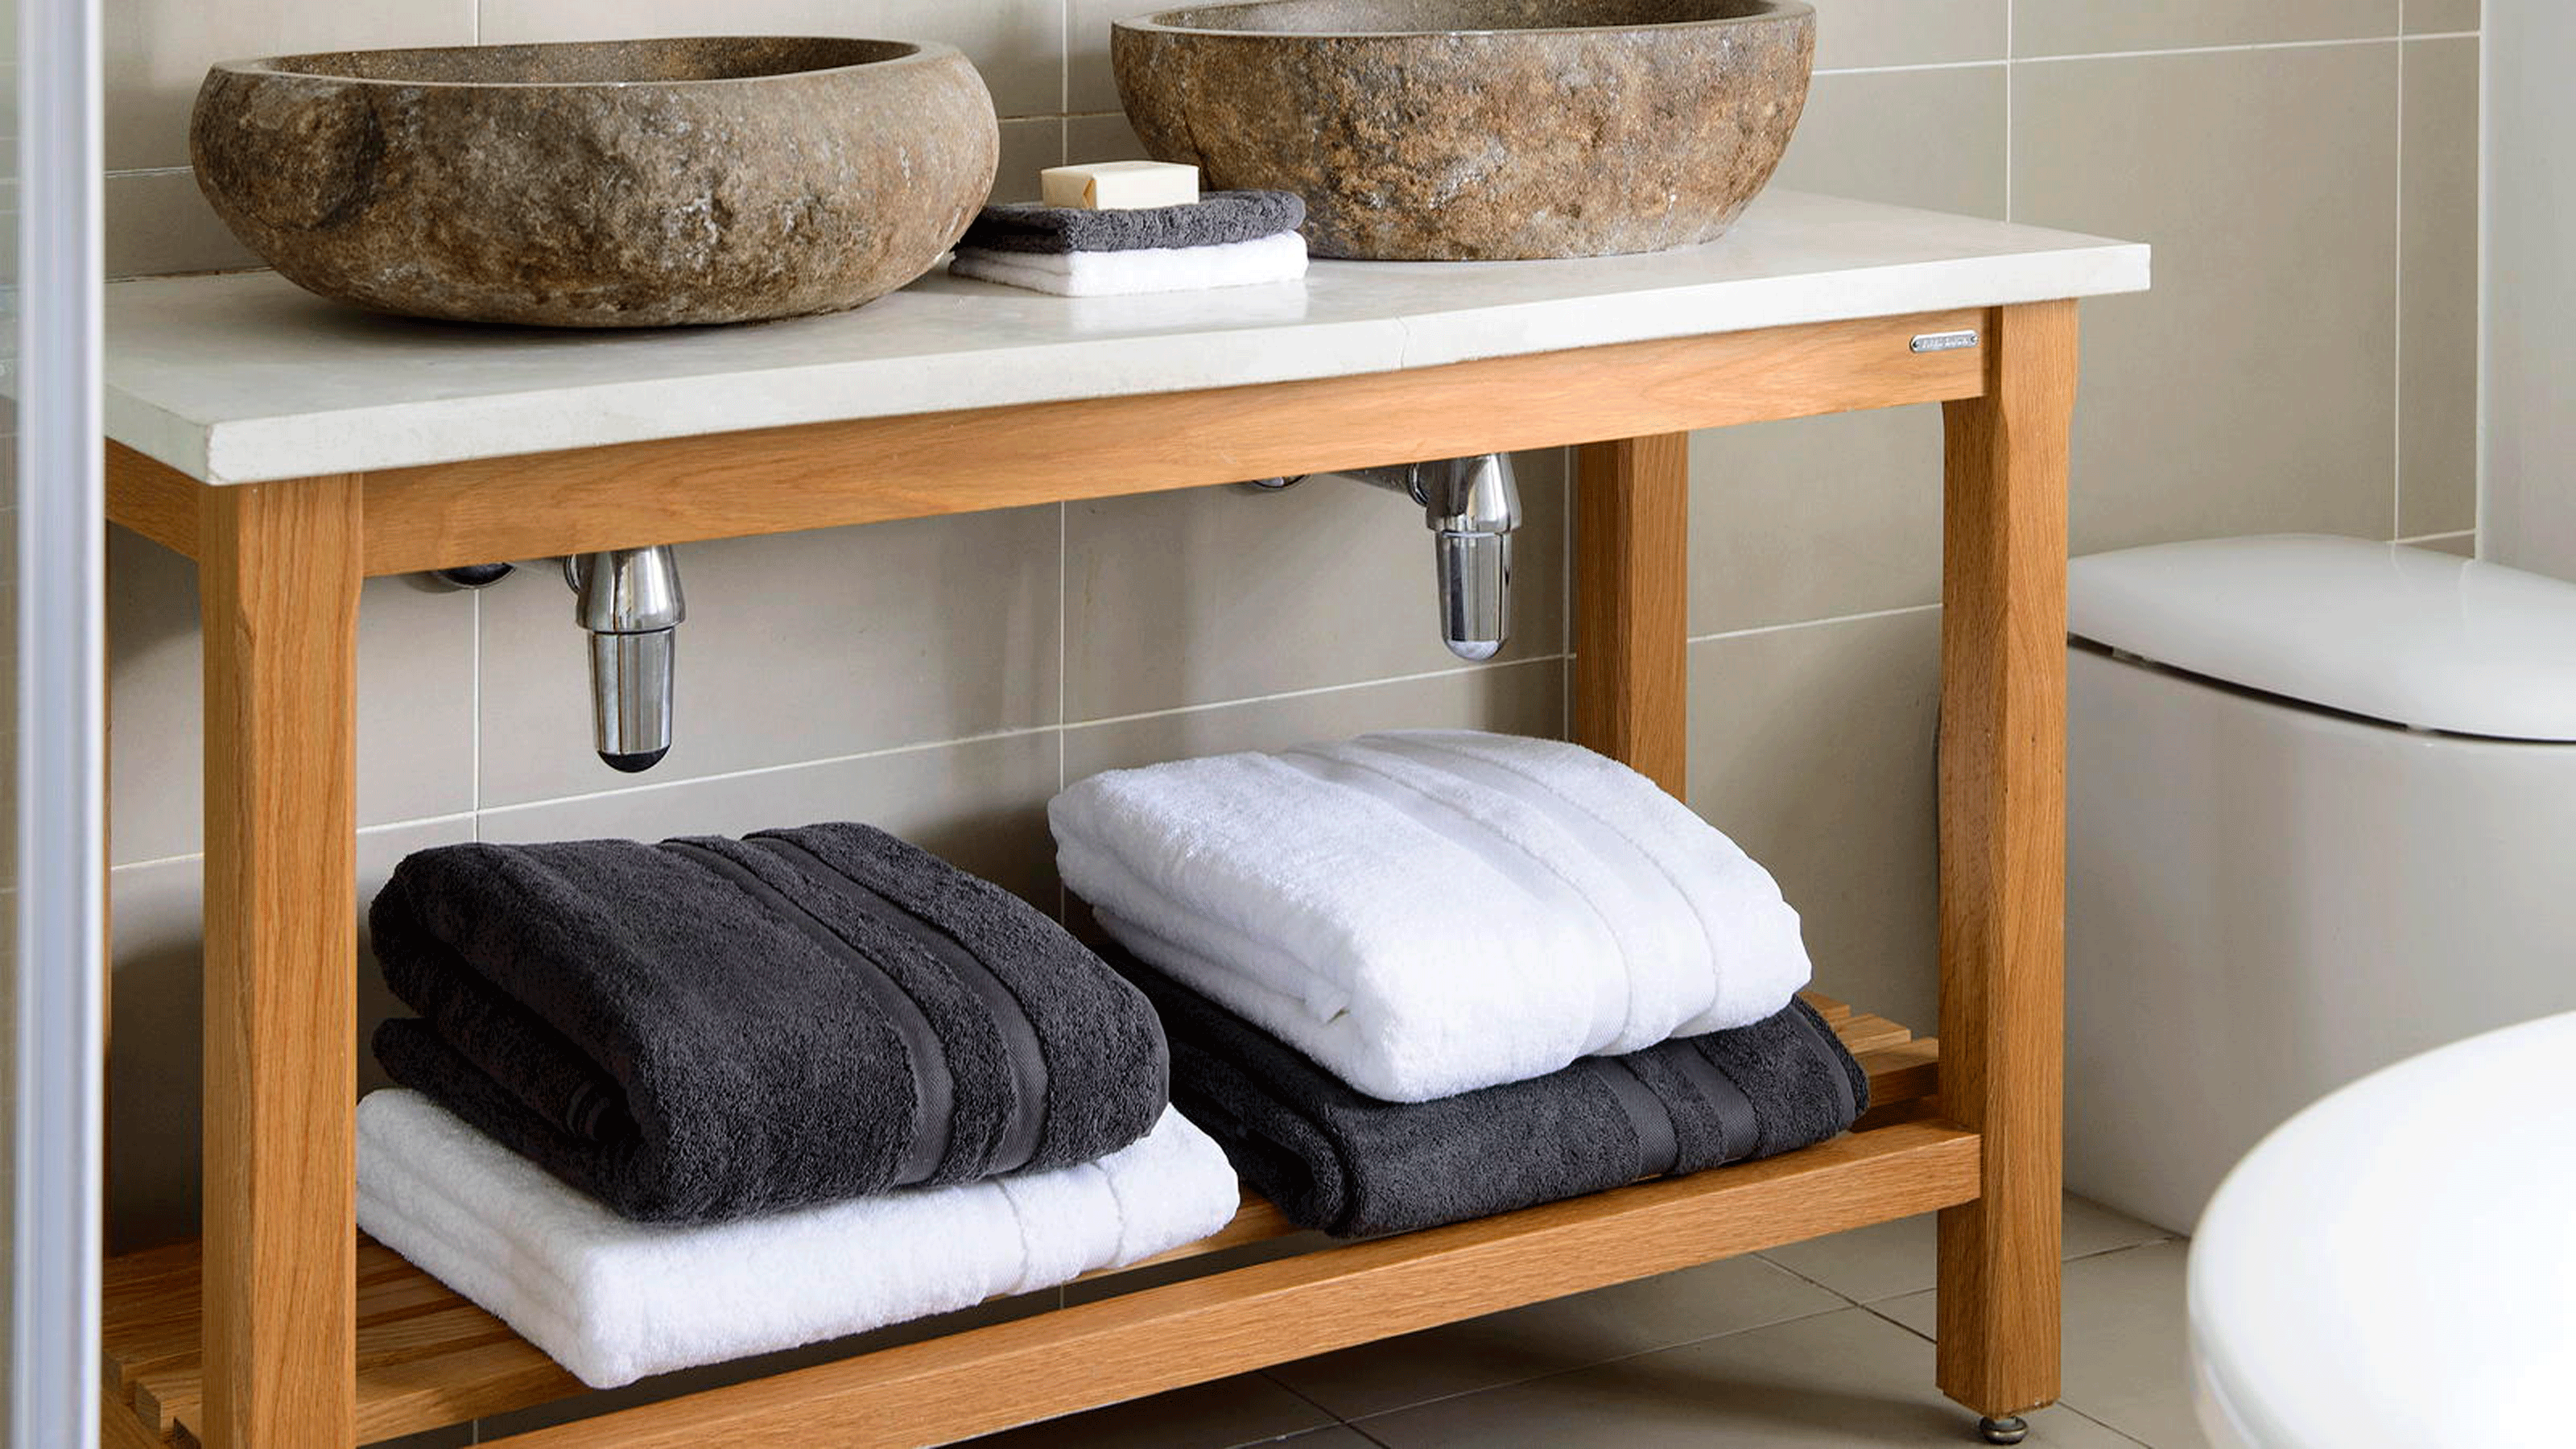 10 idées de rangement pour serviettes pour garder votre salle de bain propre et bien rangée | Maison idéale